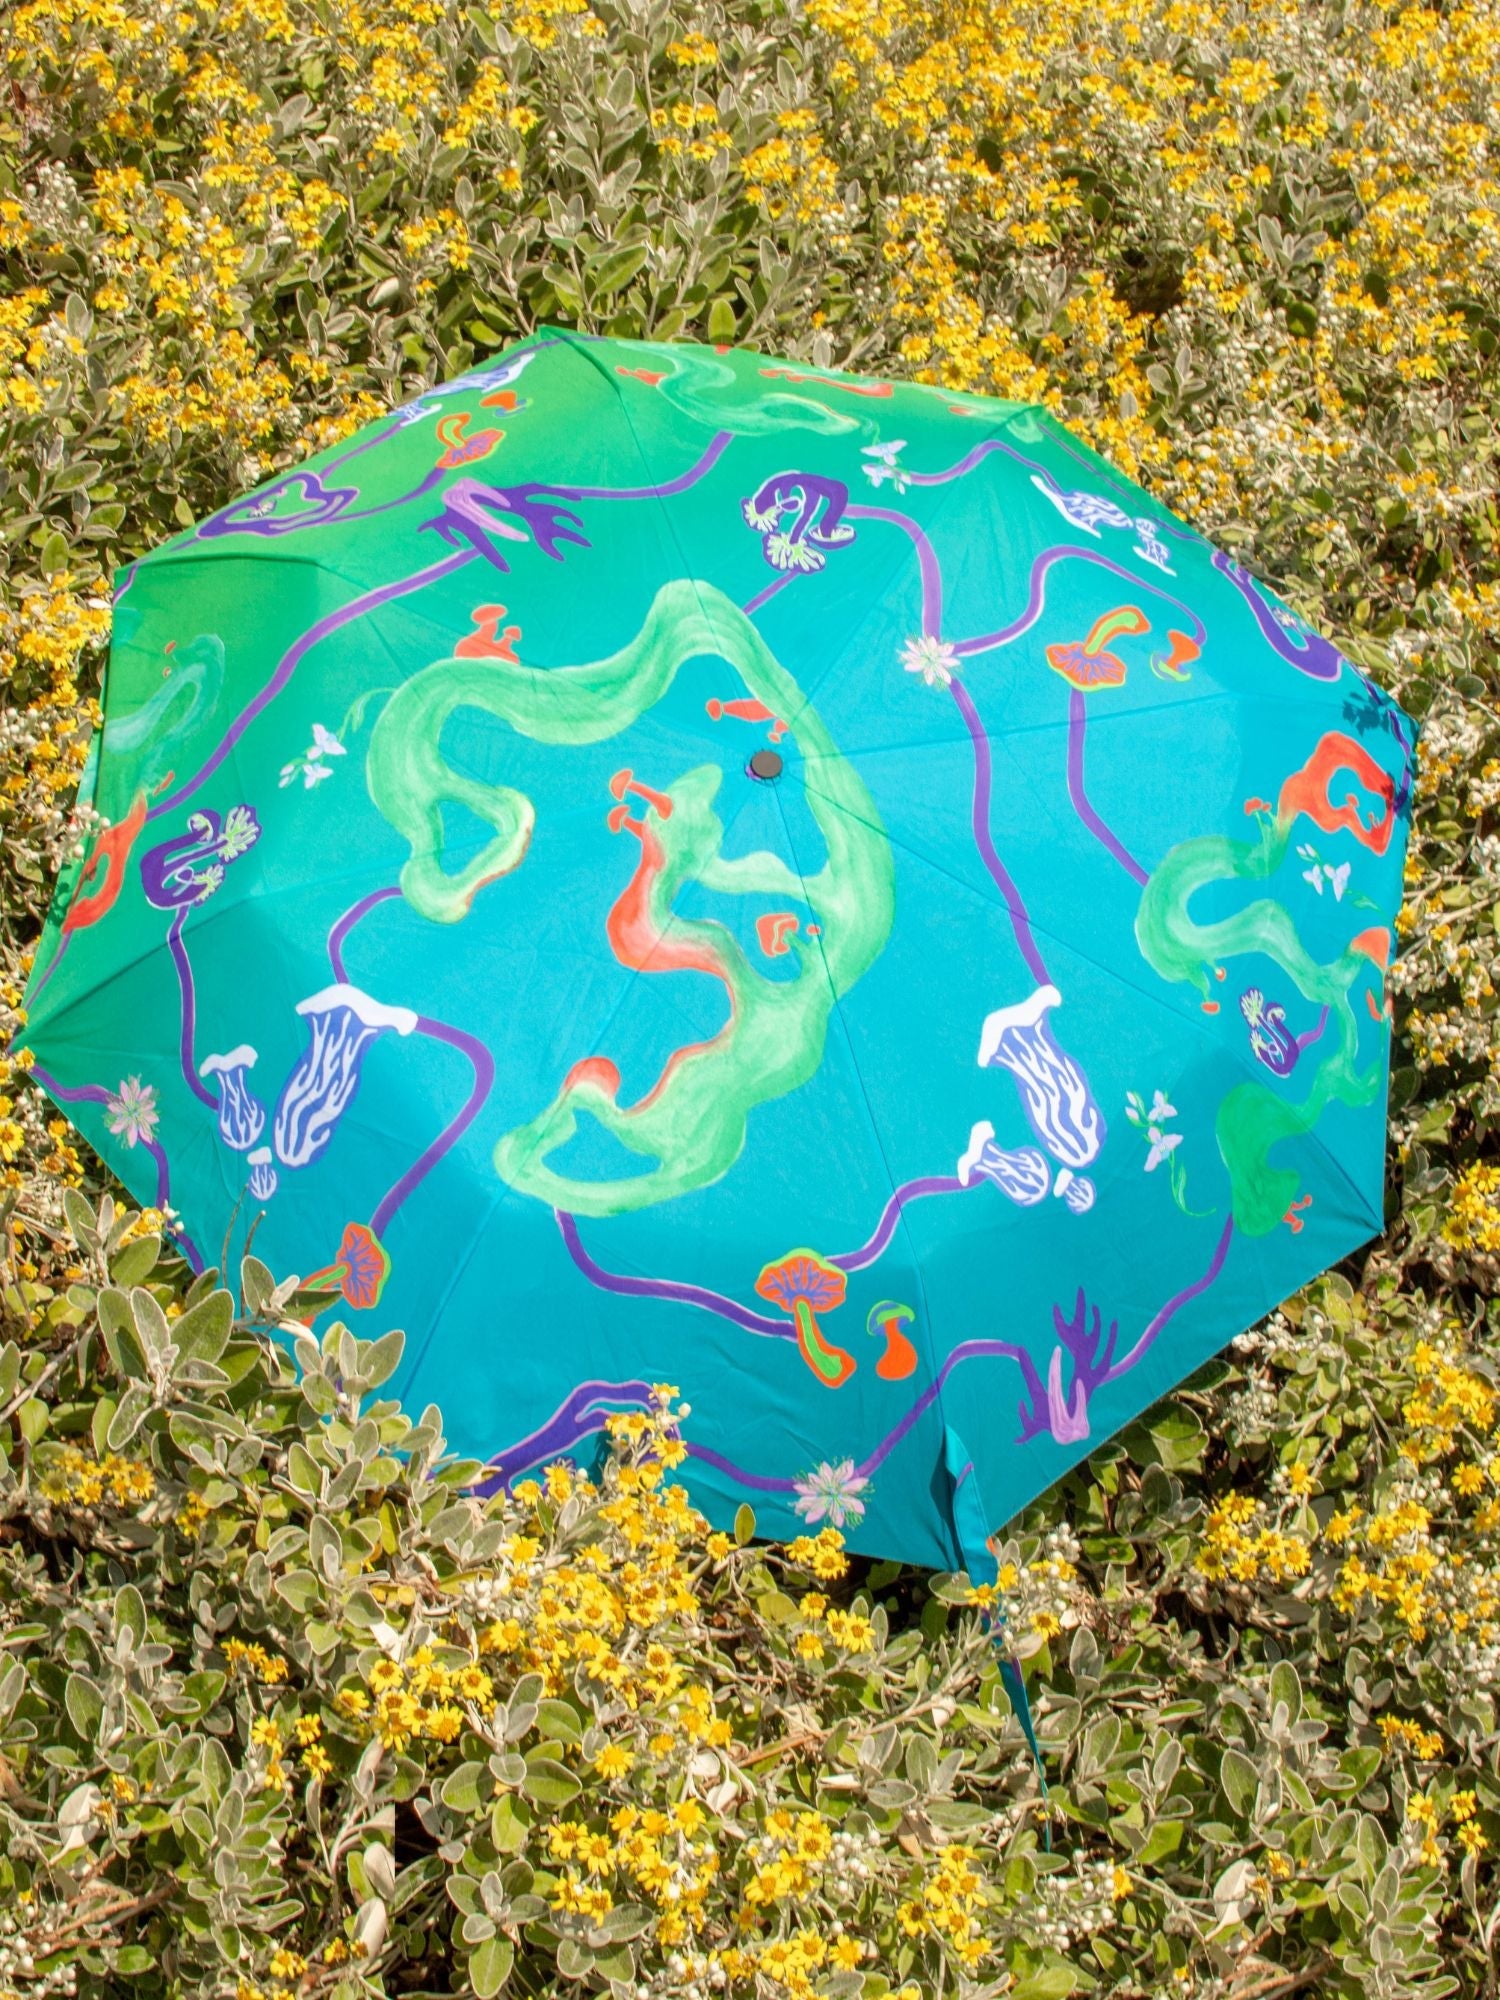 Aqua Fungi Eco-friendly Umbrella